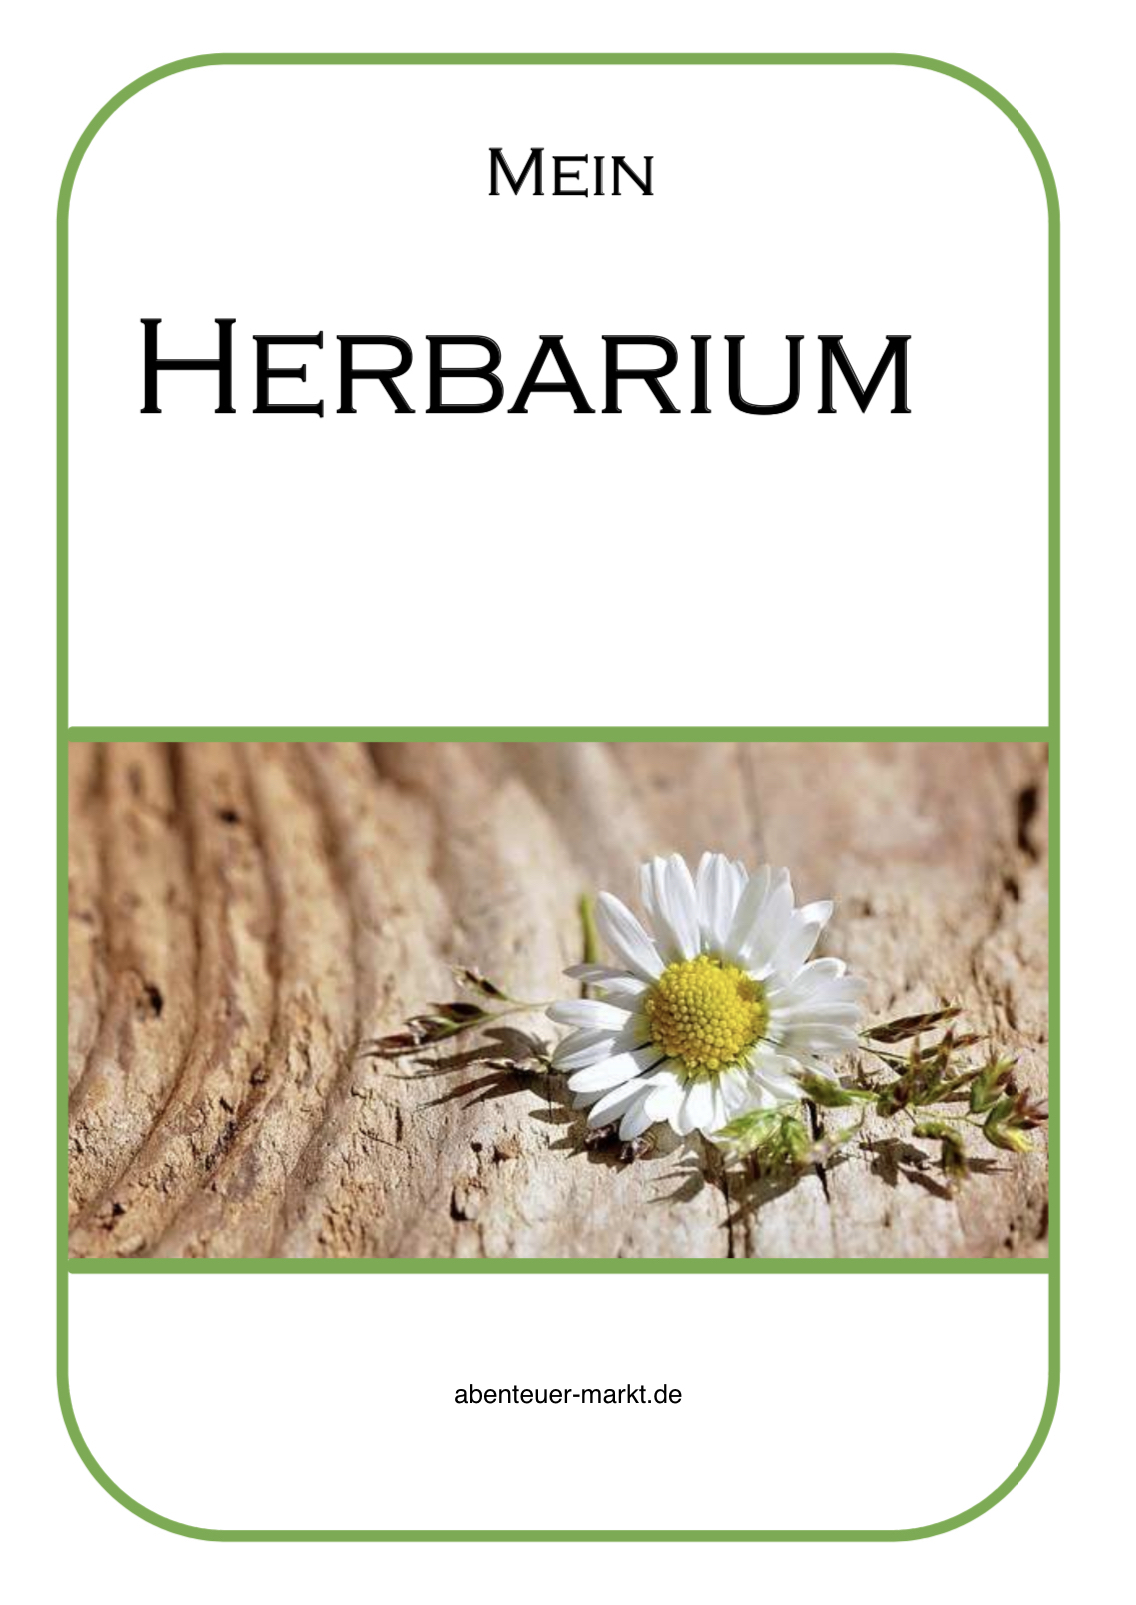 2. Bild zum Schritt 25 für das Bastel- und DIY-Abenteuer für Kinder: 'Gestaltet euch ein Herbarium mit Blumen, wie z.B. Gänseblümchen, Rotklee,...'